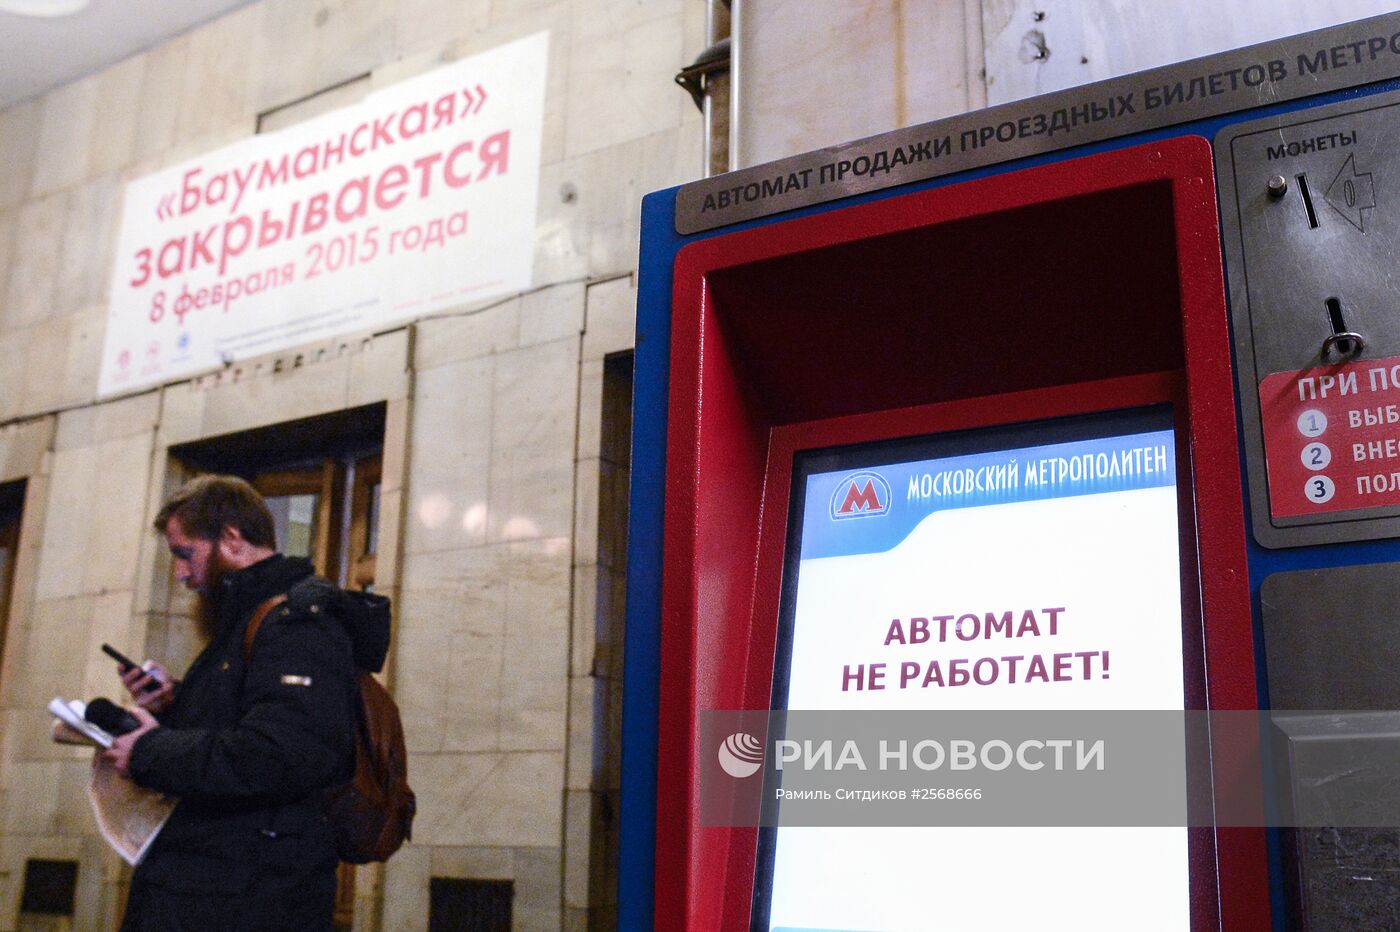 Станция метро "Бауманская" закрыта на реконструкцию